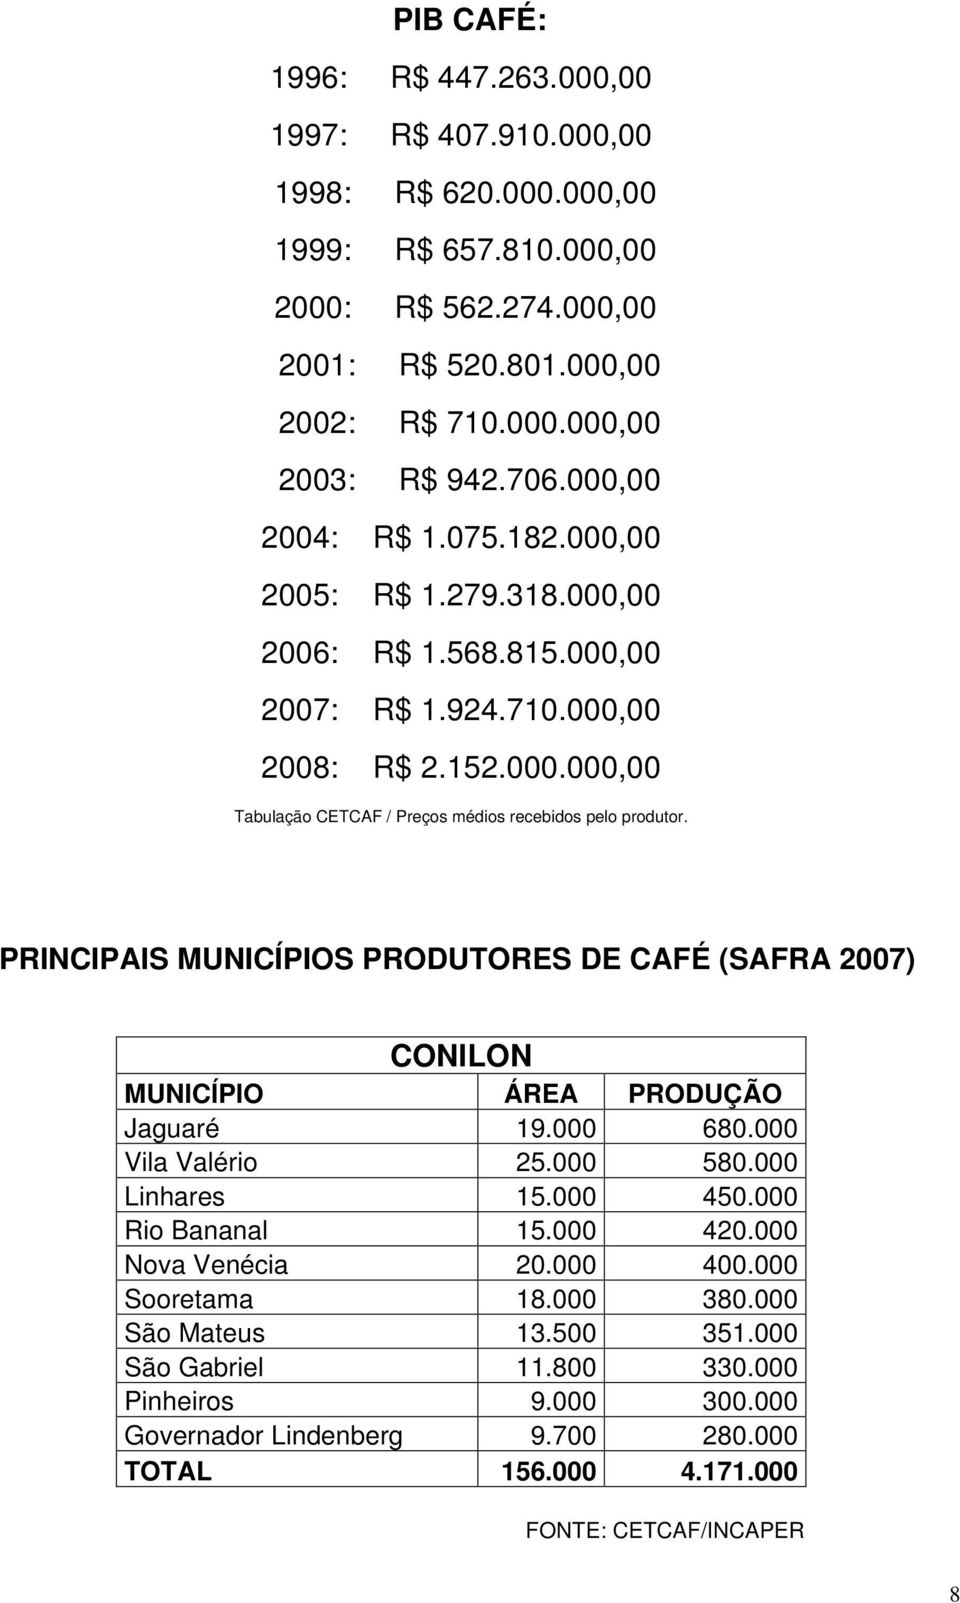 PRINCIPAIS MUNICÍPIOS PRODUTORES DE CAFÉ (SAFRA 2007) CONILON MUNICÍPIO ÁREA PRODUÇÃO Jaguaré 19.000 680.000 Vila Valério 25.000 580.000 Linhares 15.000 450.000 Rio Bananal 15.000 420.